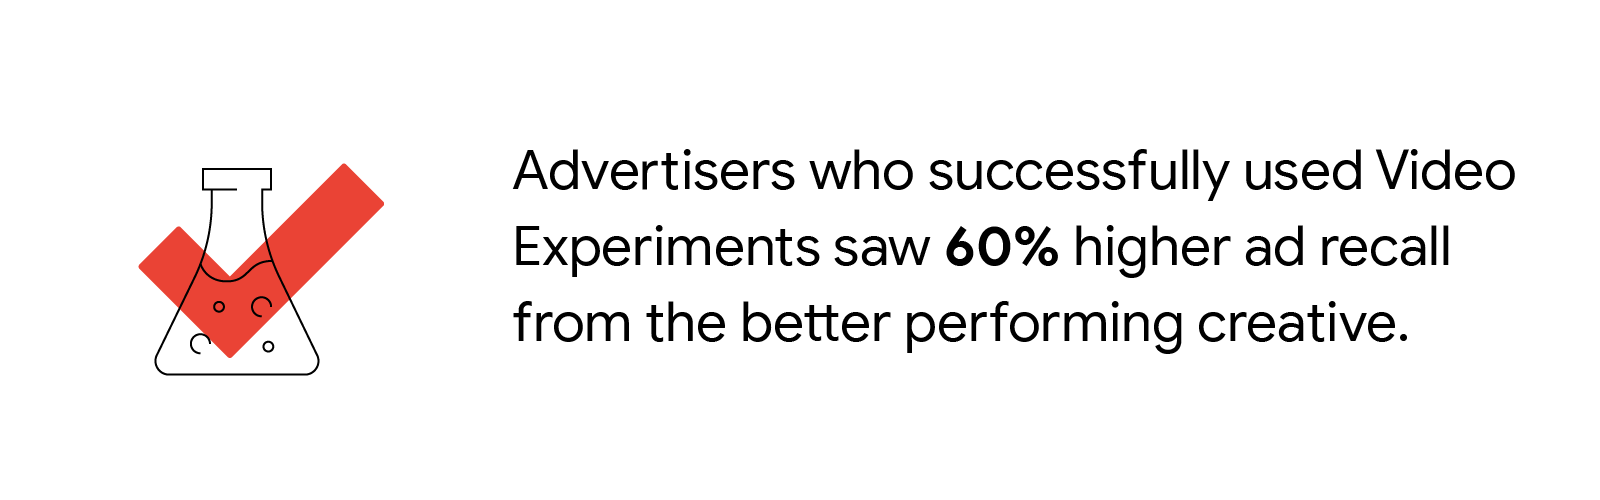 Успешные эксперименты с использованием разных креативов приводят к 60% повышаемости запоминанию рекламы